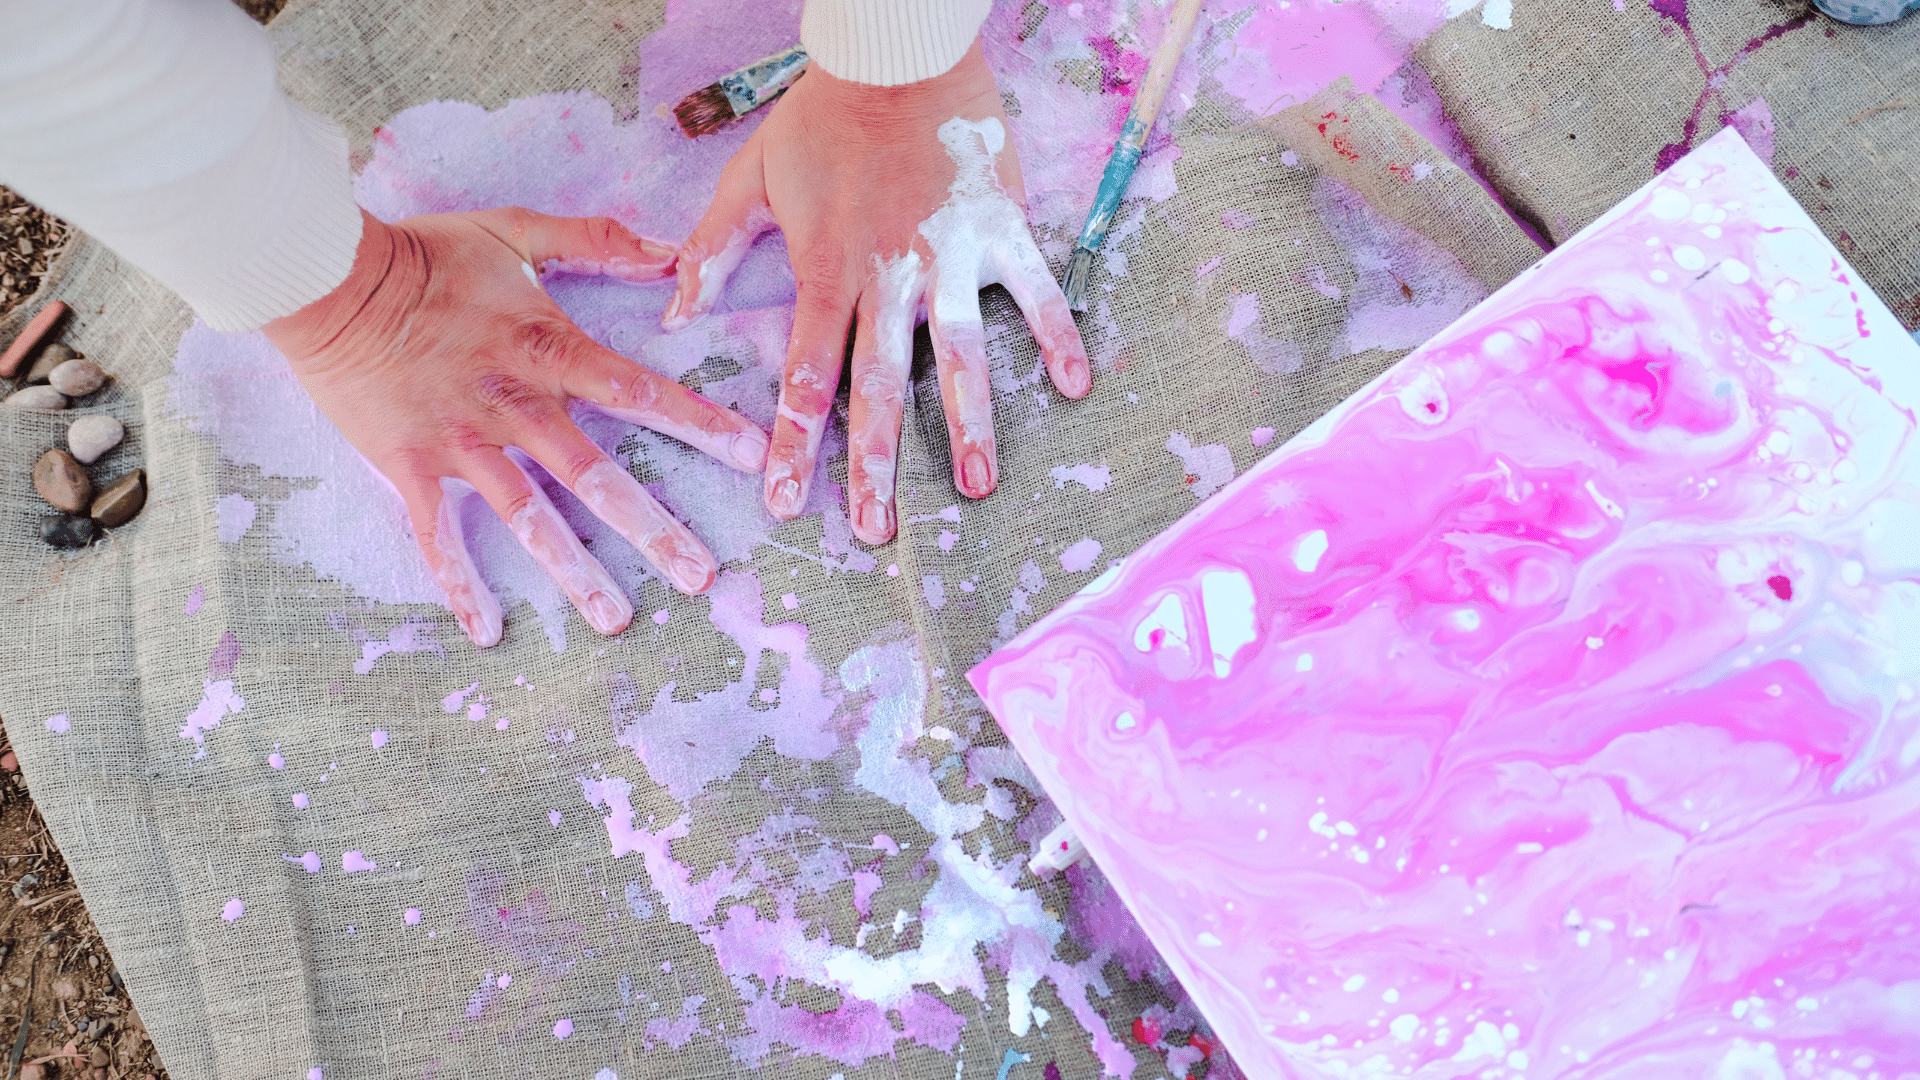 Kunsttherapie bei Krebs: farbige Hände neben bemalter Leinwand